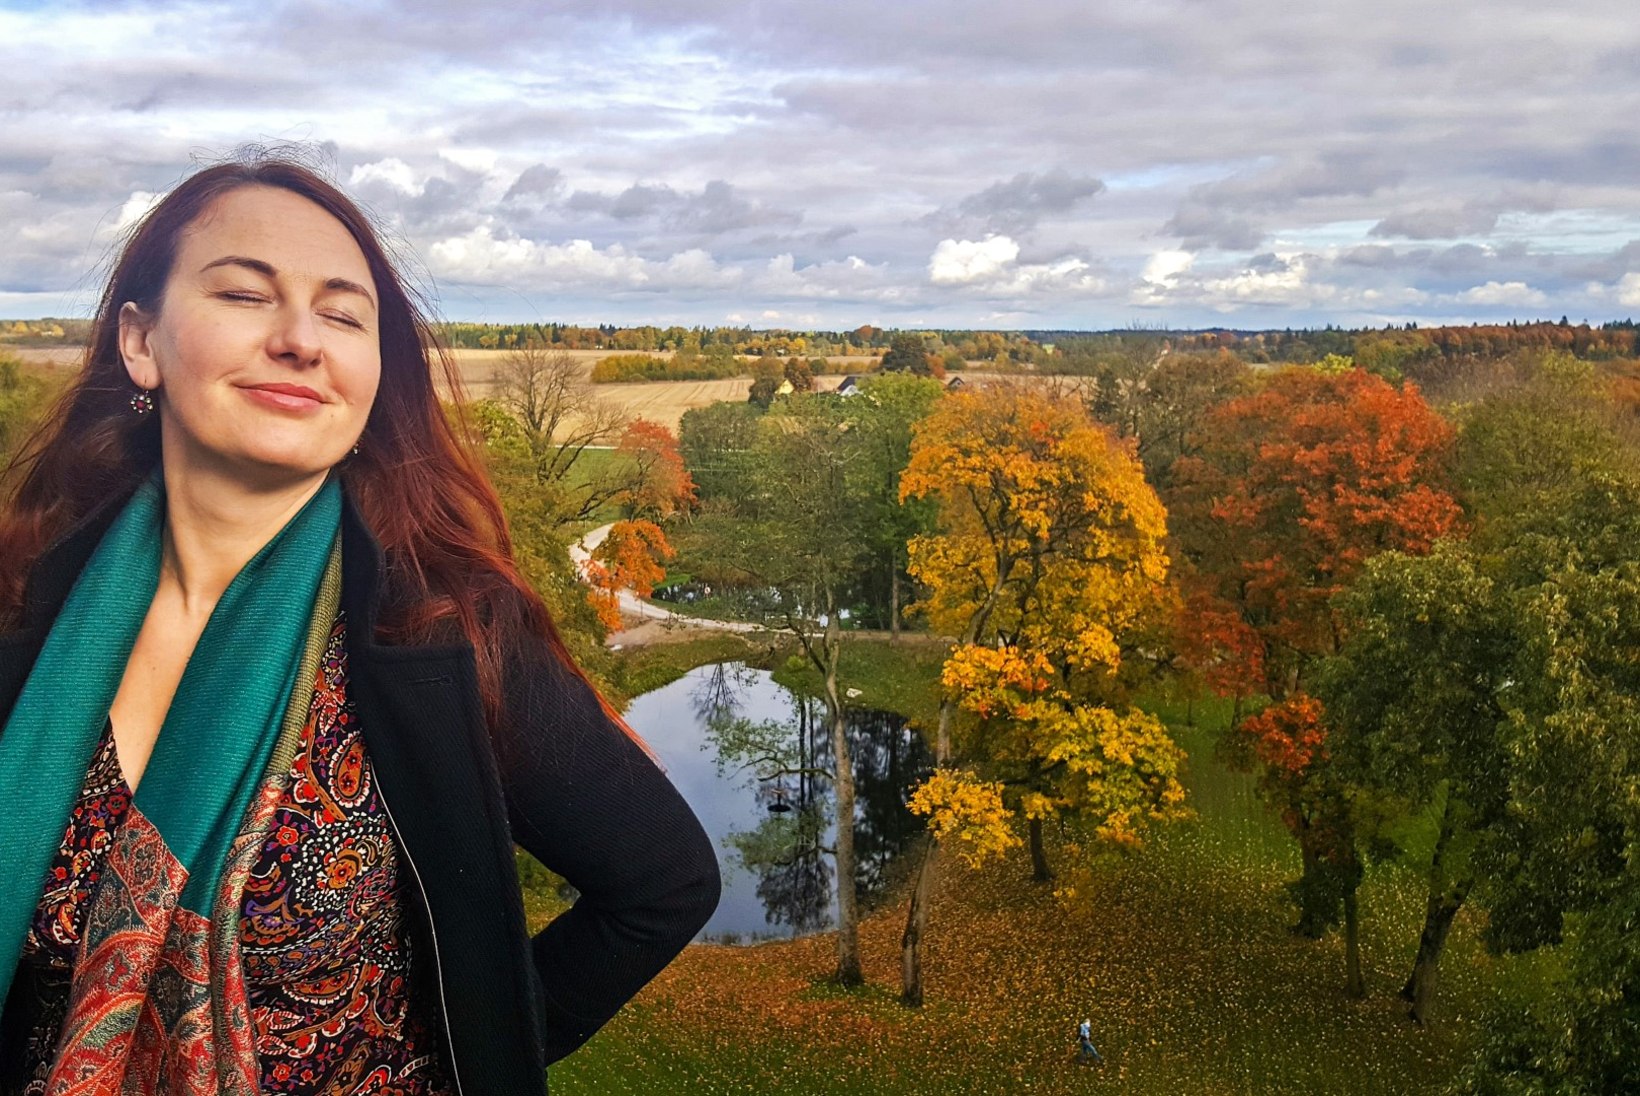 BLOGIAUHINNAD | Mõisatest blogiv Katrin Talvik: üldiselt ma ei avalda, kellele mõis kuulub, see oleks privaatsuse rikkumine